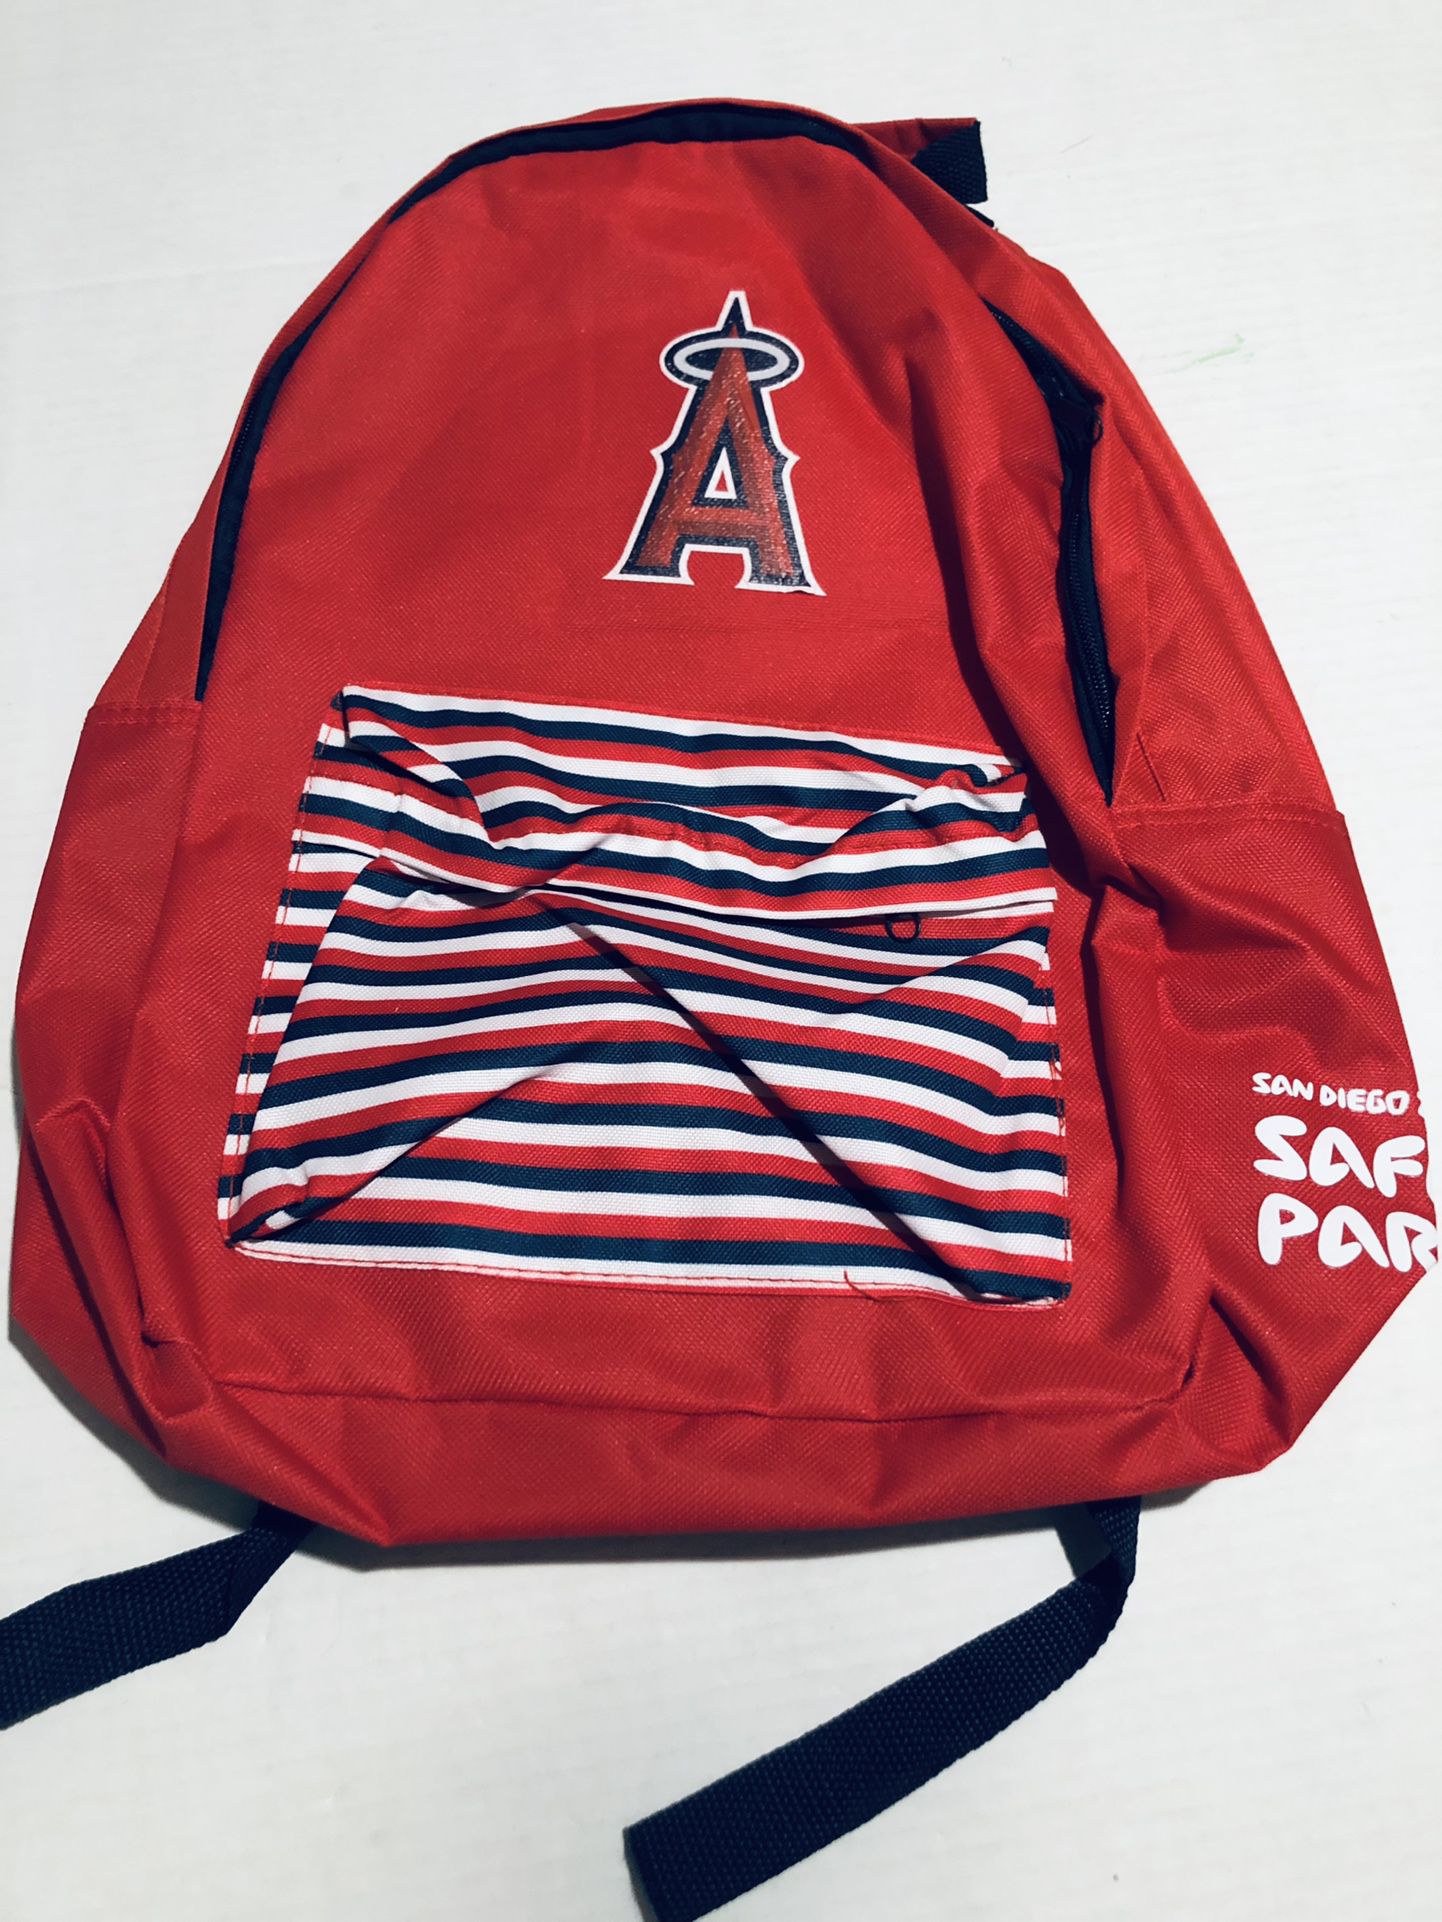 New Anaheim Angels Baseball Backpack 